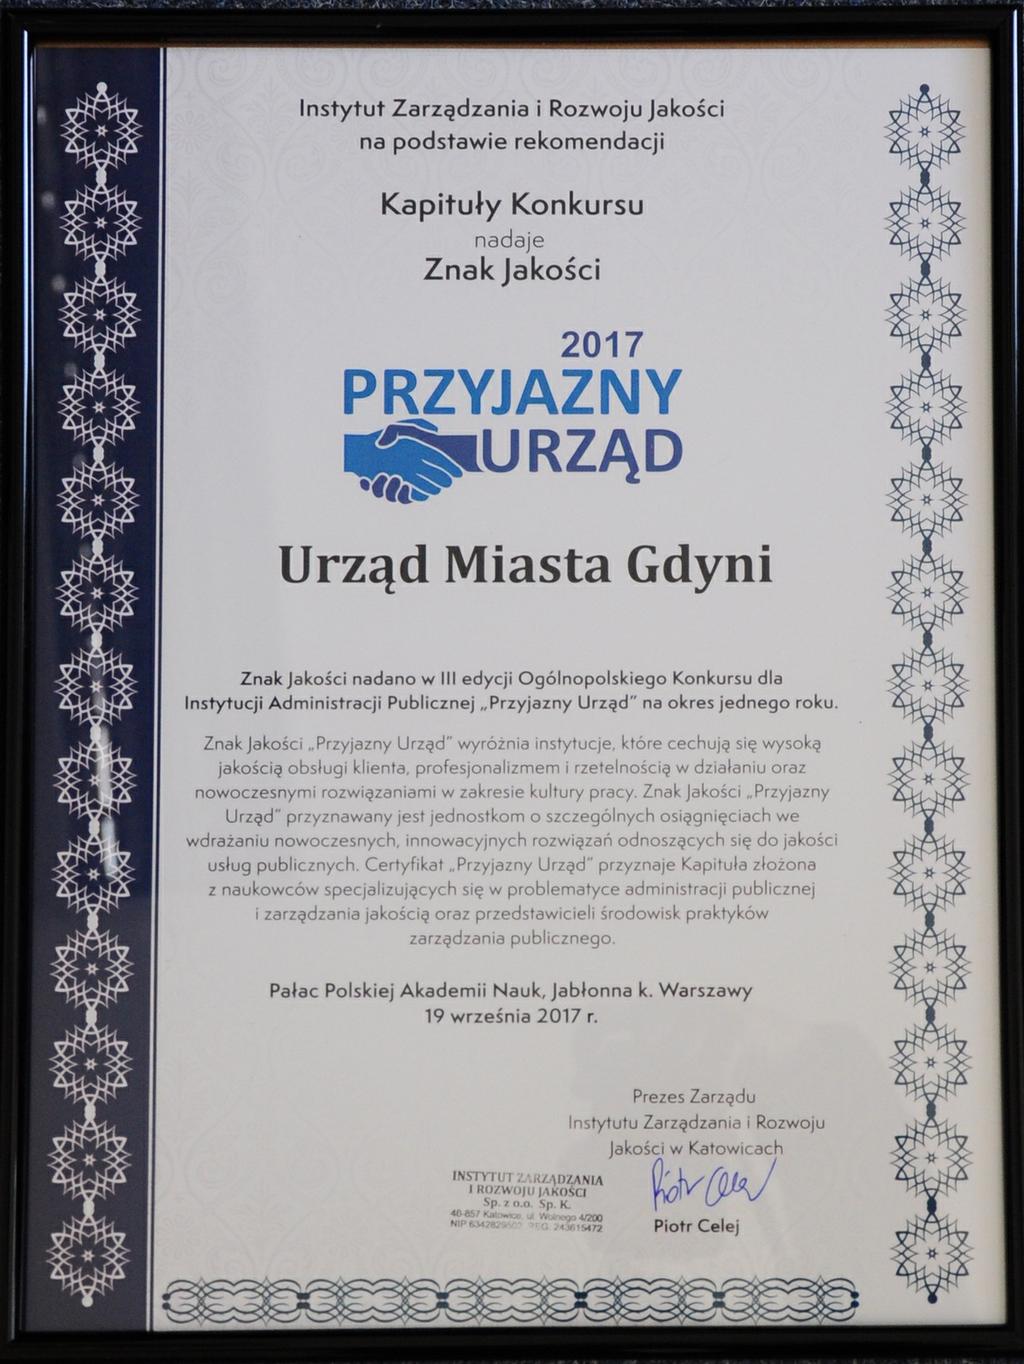 19 września. To już kolejny raz, kiedy Urząd Miasta Gdyni zdobywa laury w dziedzinie dobrego zarządzania. Najnowszym osiągnięciem jest wygrana w Ogólnopolskim Konkursie o Znak Jakości Przyjazny Urząd.